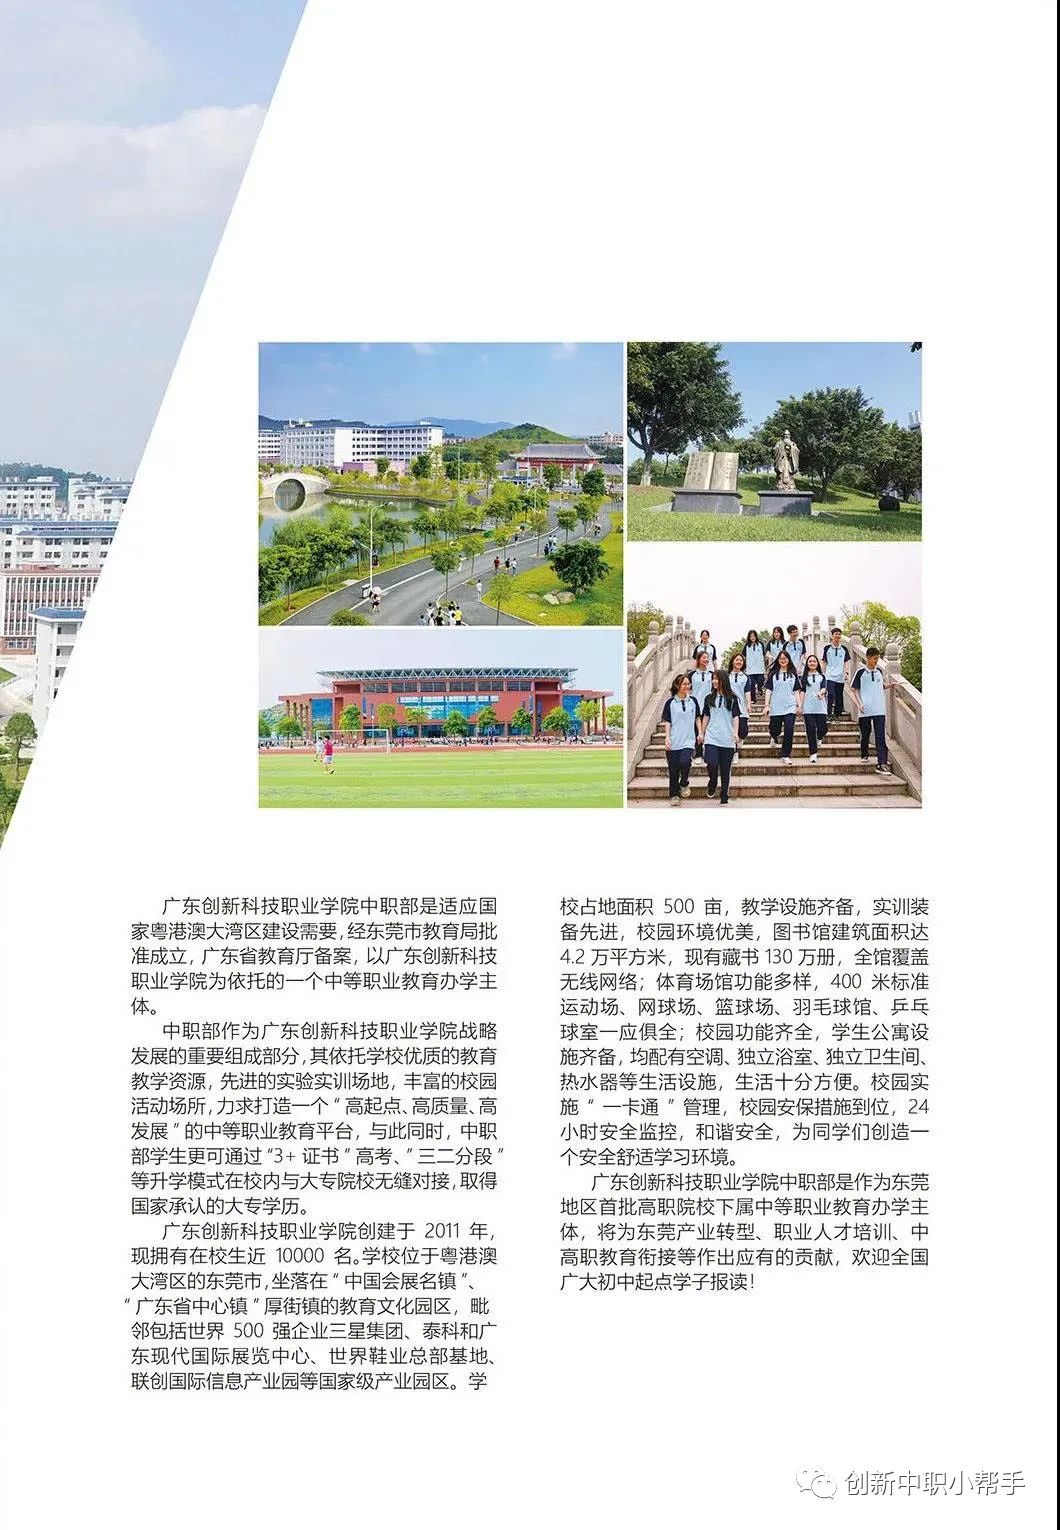 广东创新科技职业学院 中职部丨2021年招生简章